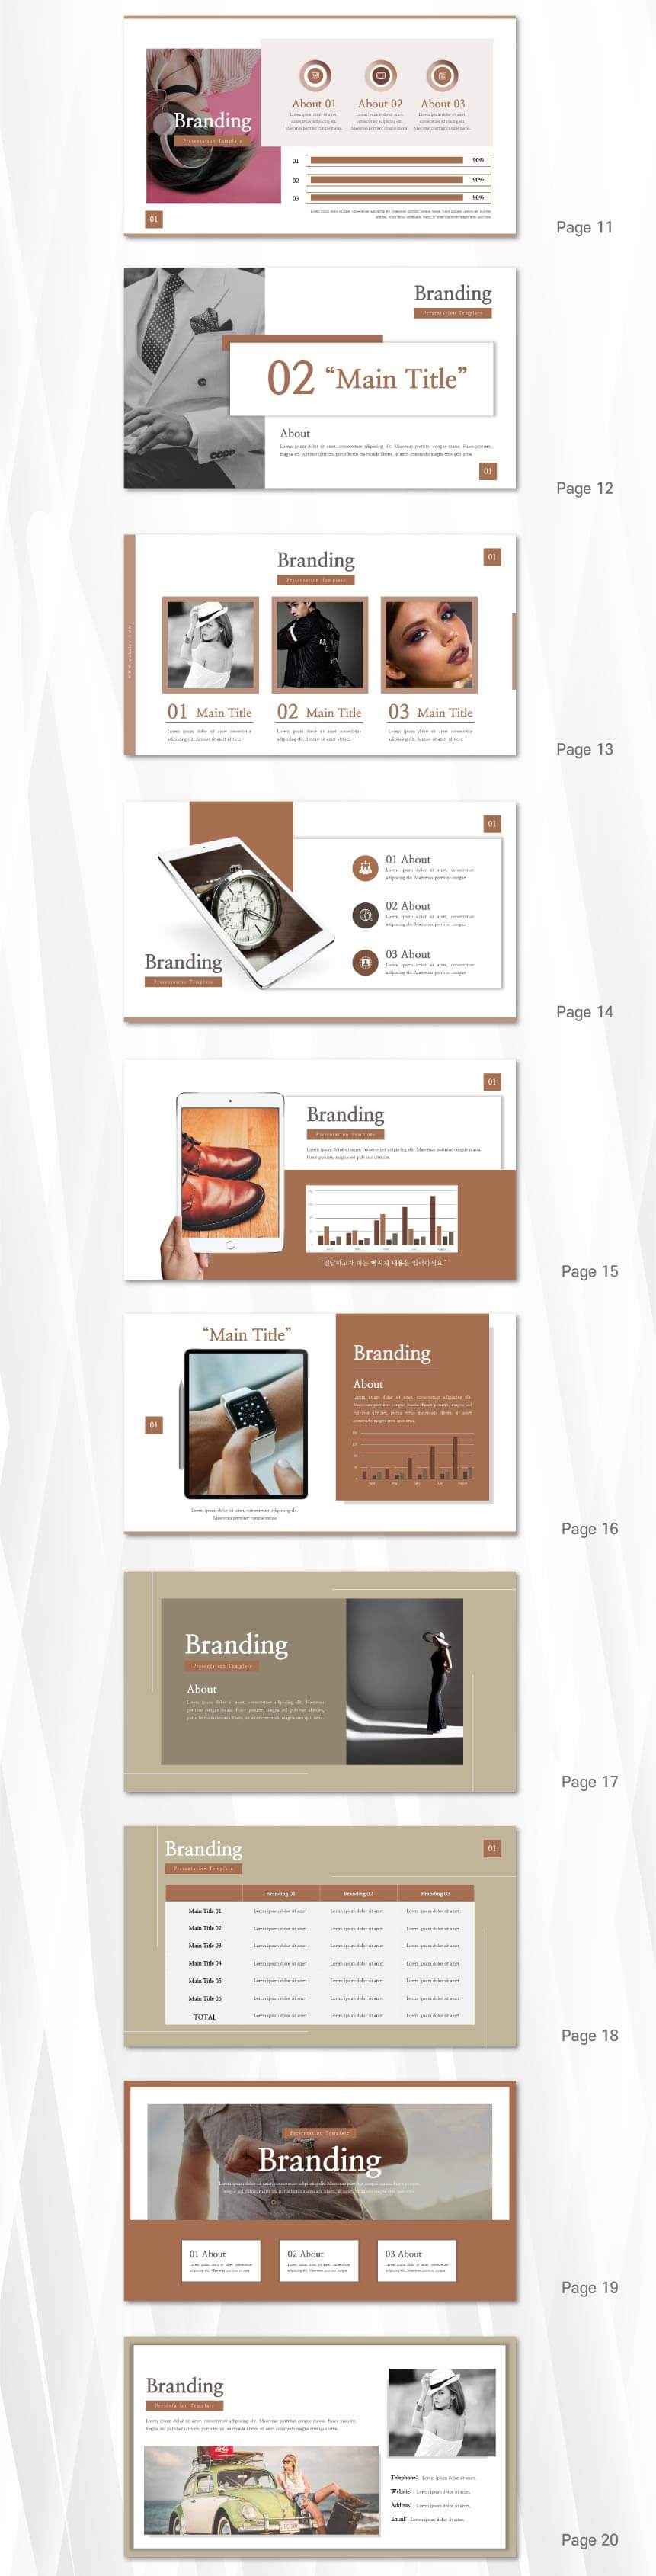 마케팅-전략-기획서-피피티-슬라이드-2